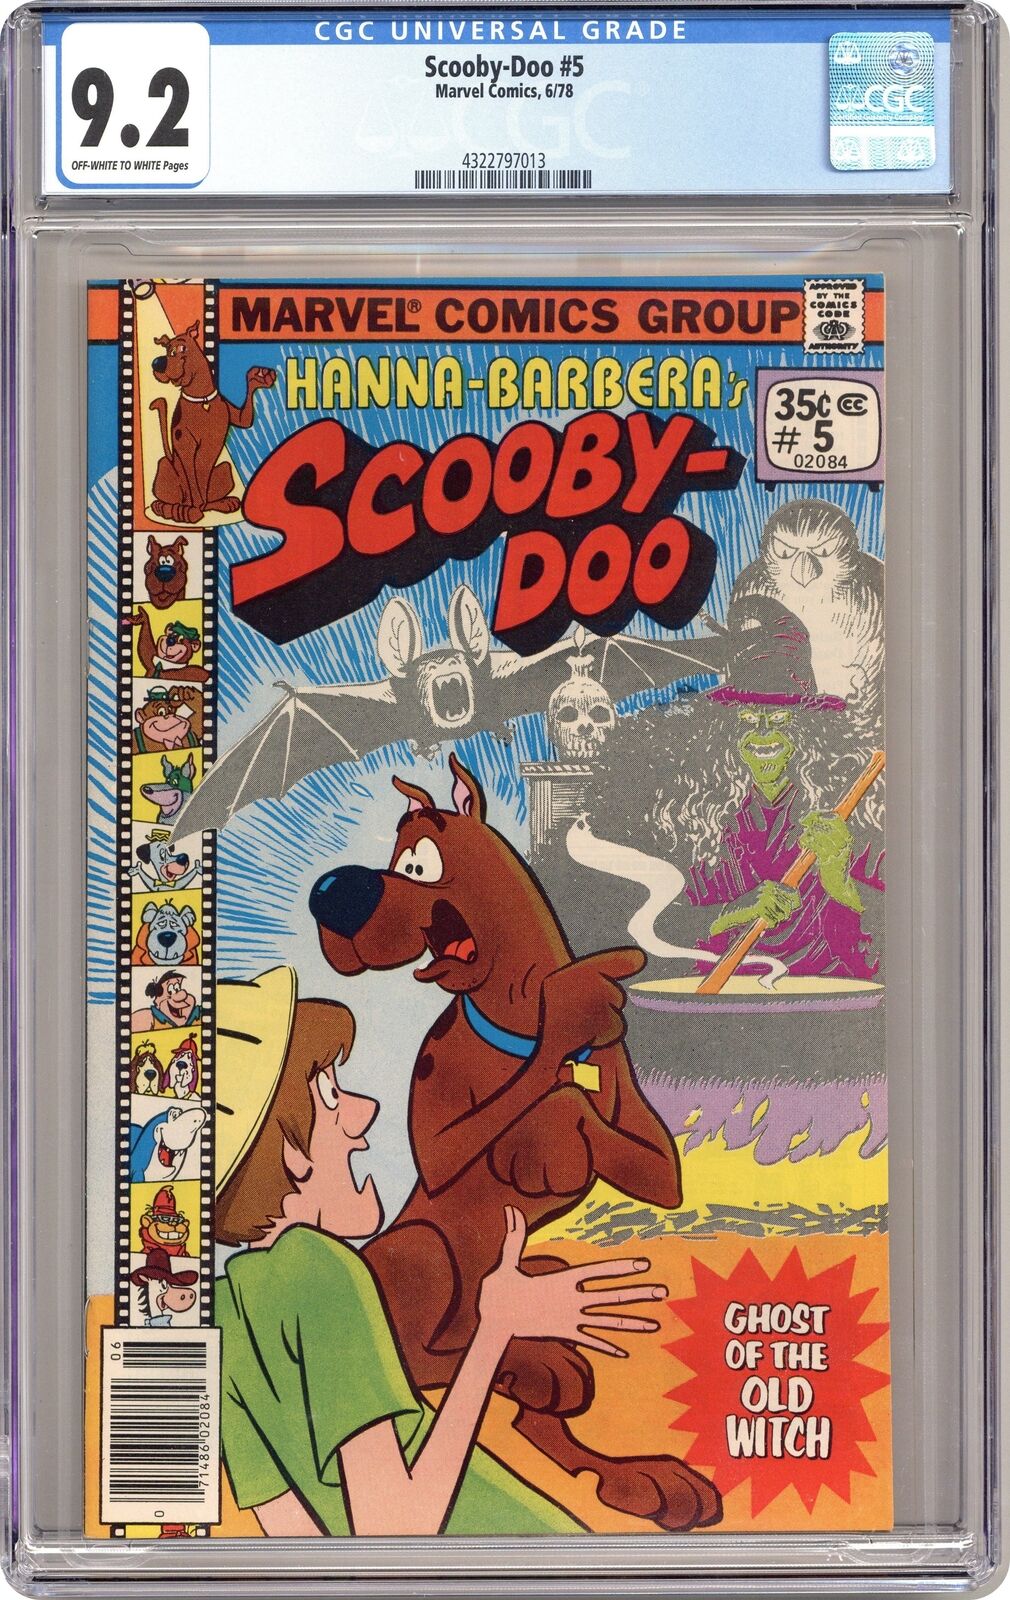 Scooby-Doo #5 CGC 9.2 1978 4322797013